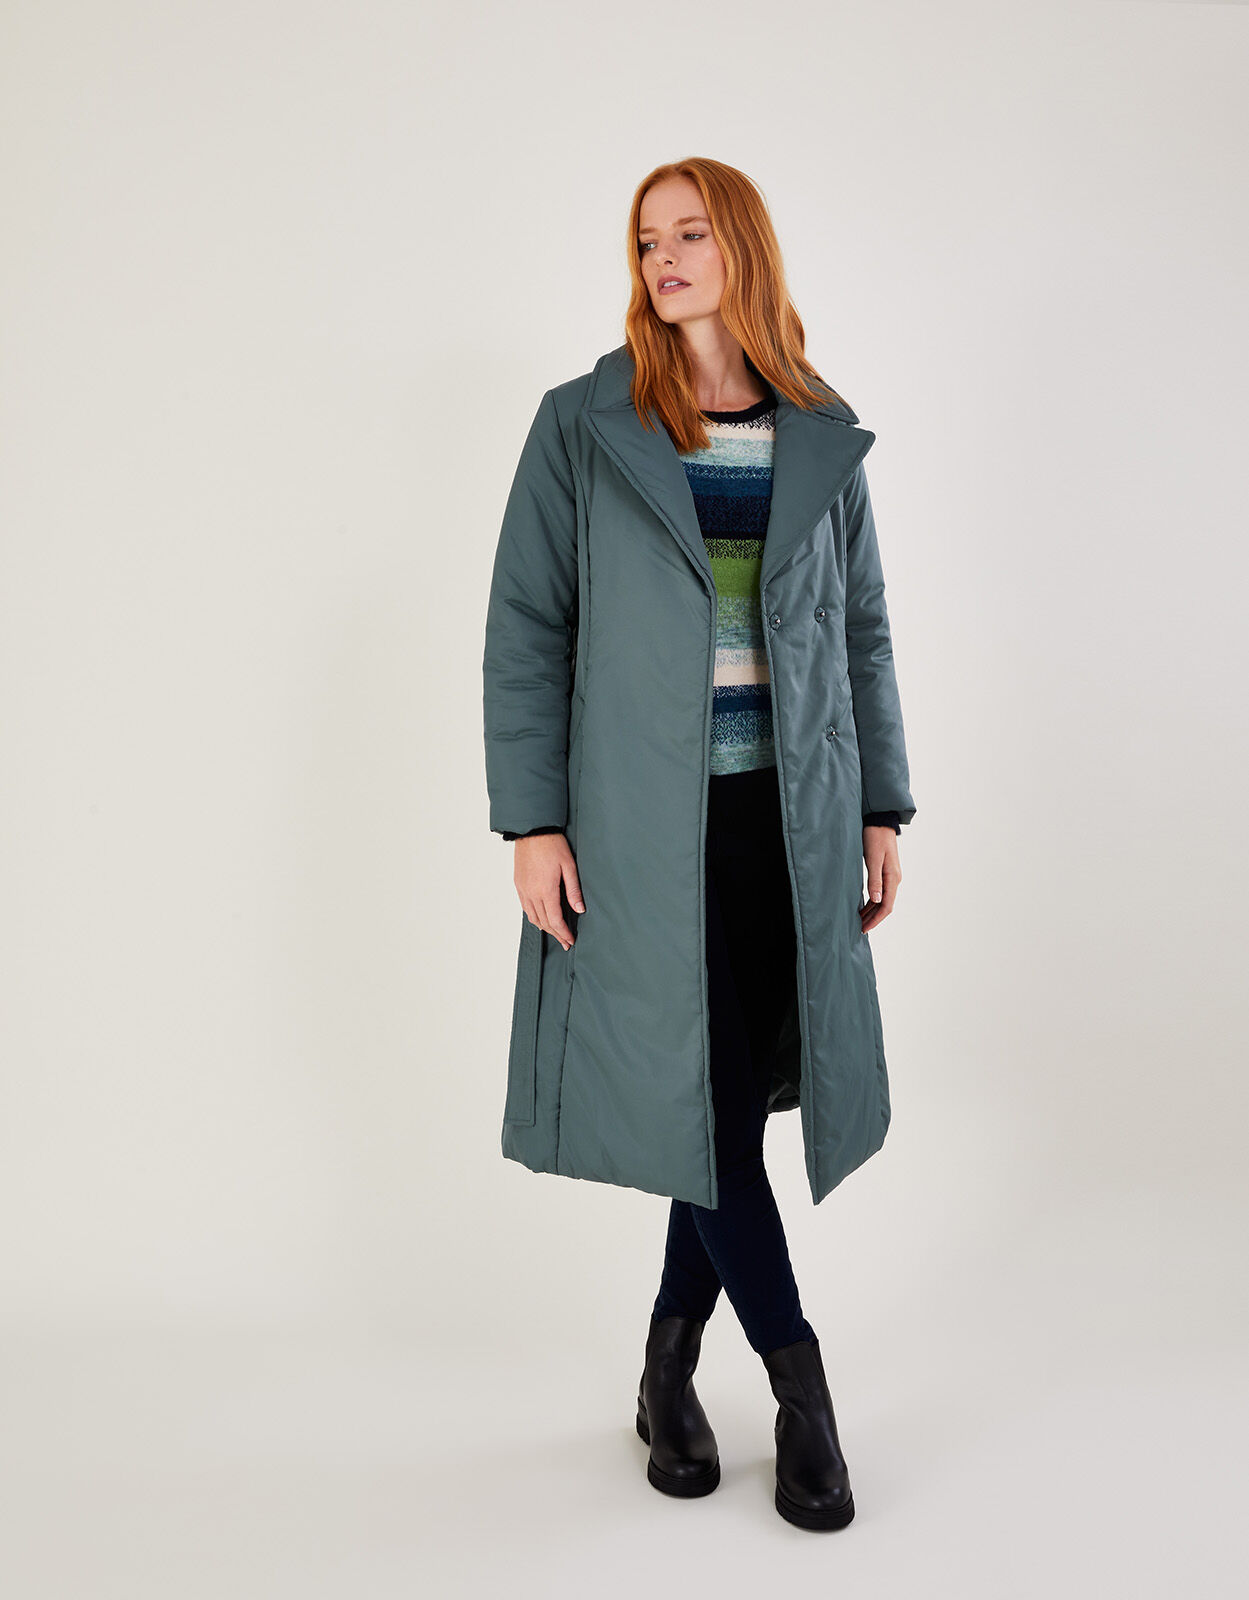 Fórmula Joven Long coat Green 42                  EU discount 94% WOMEN FASHION Coats Long coat Waterproof 